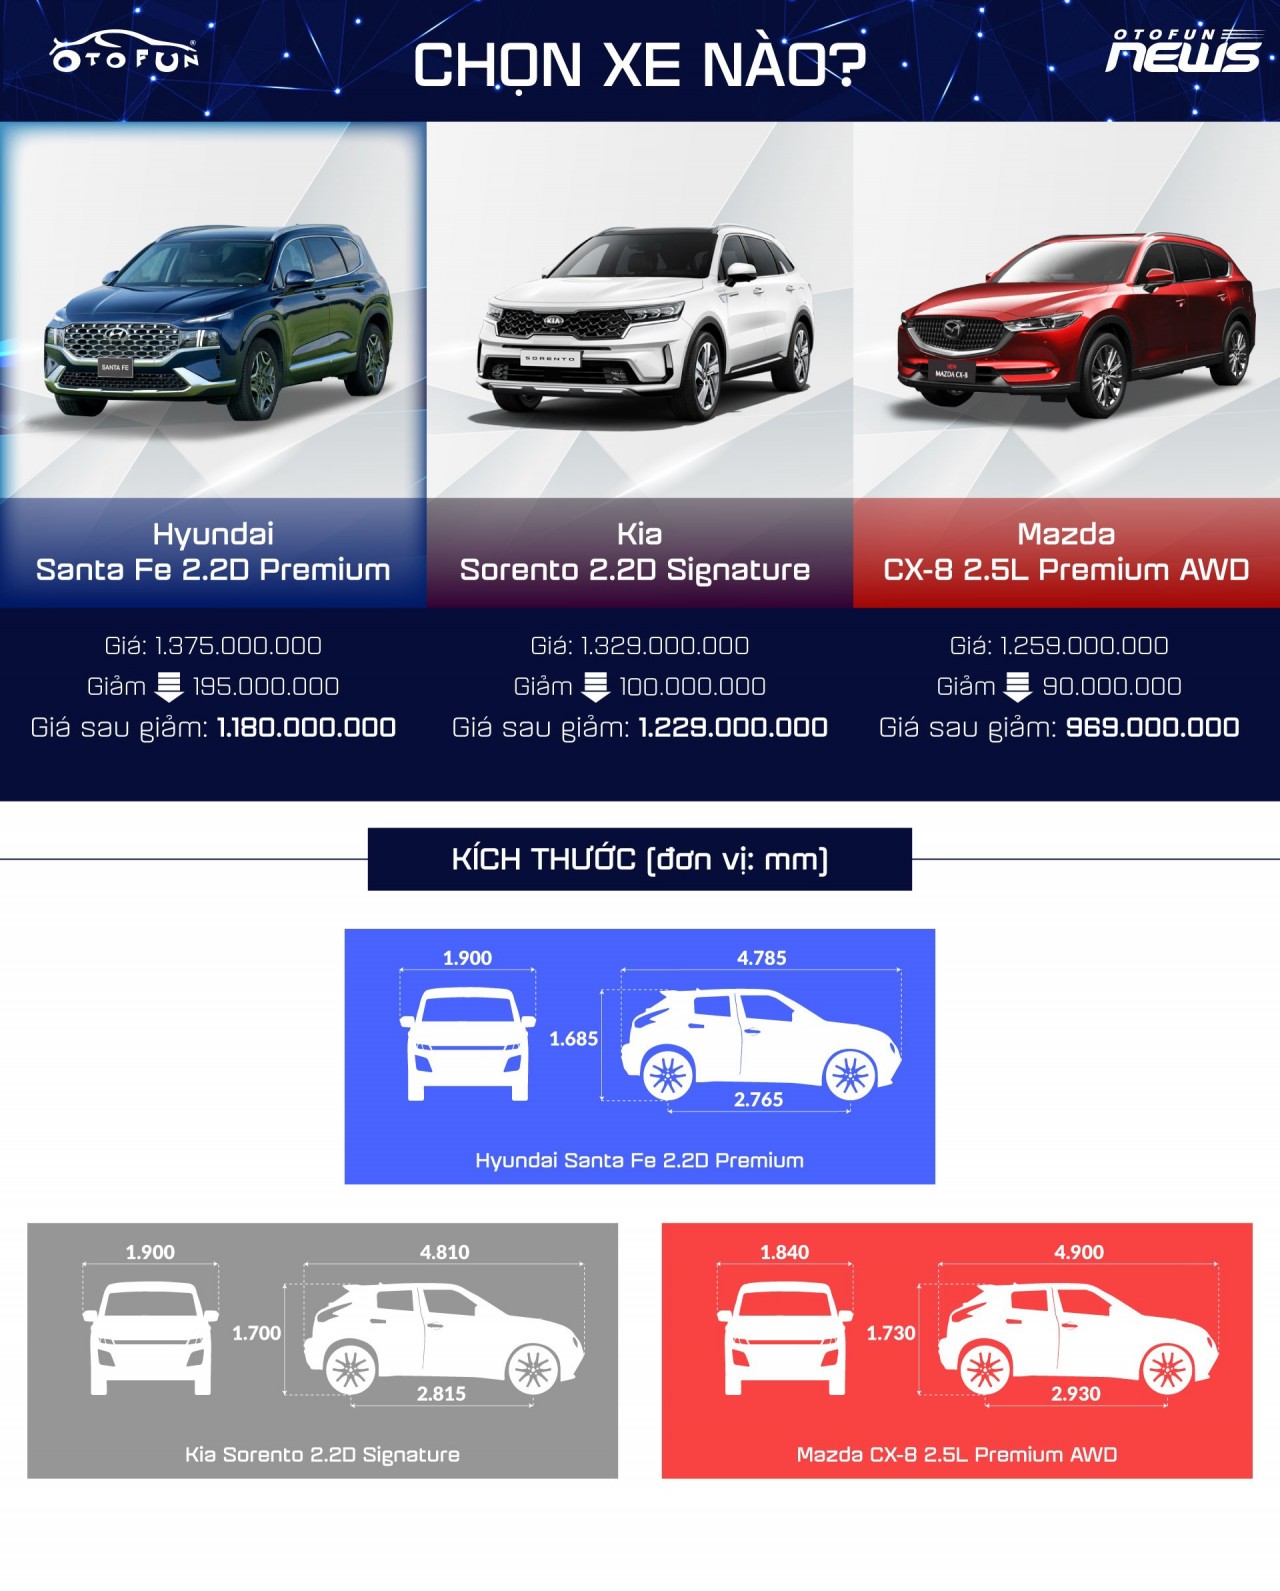 Otofun chọn: Hyundai Santa Fe - xe đáng mua nhất tuần